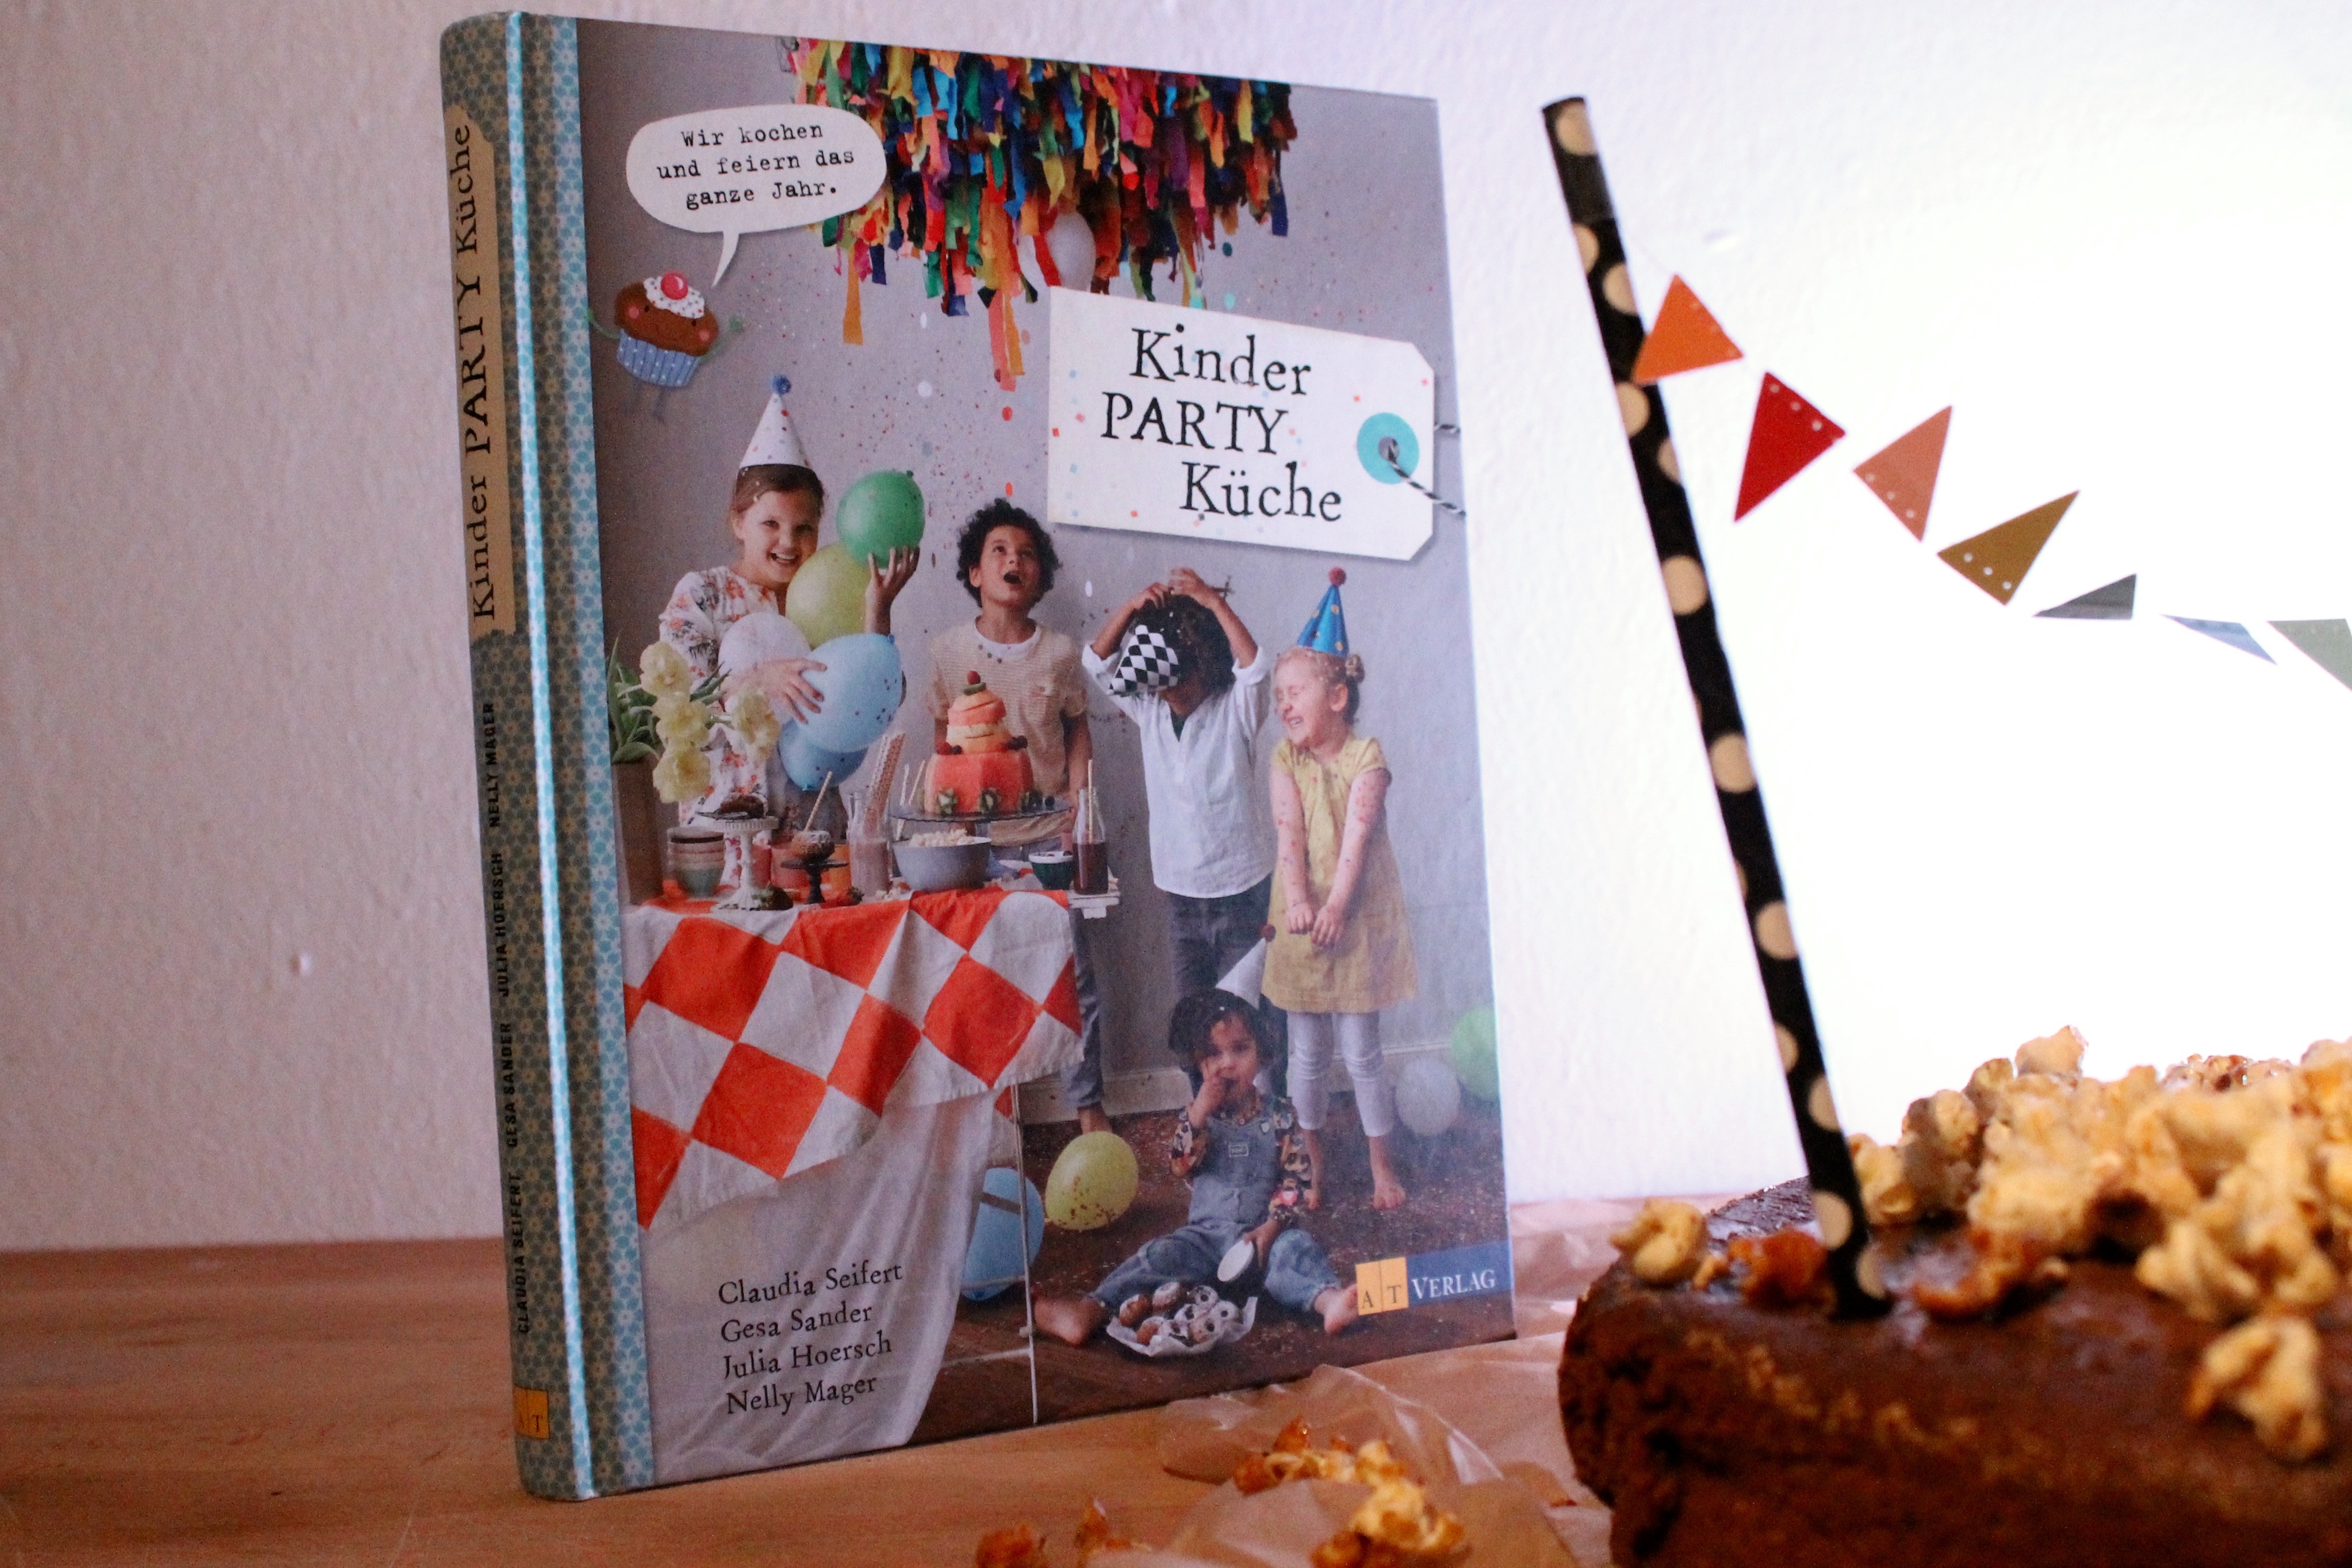 Kinder Party Küche - Das Kinderkochbuch für die Geburtstagsparty!